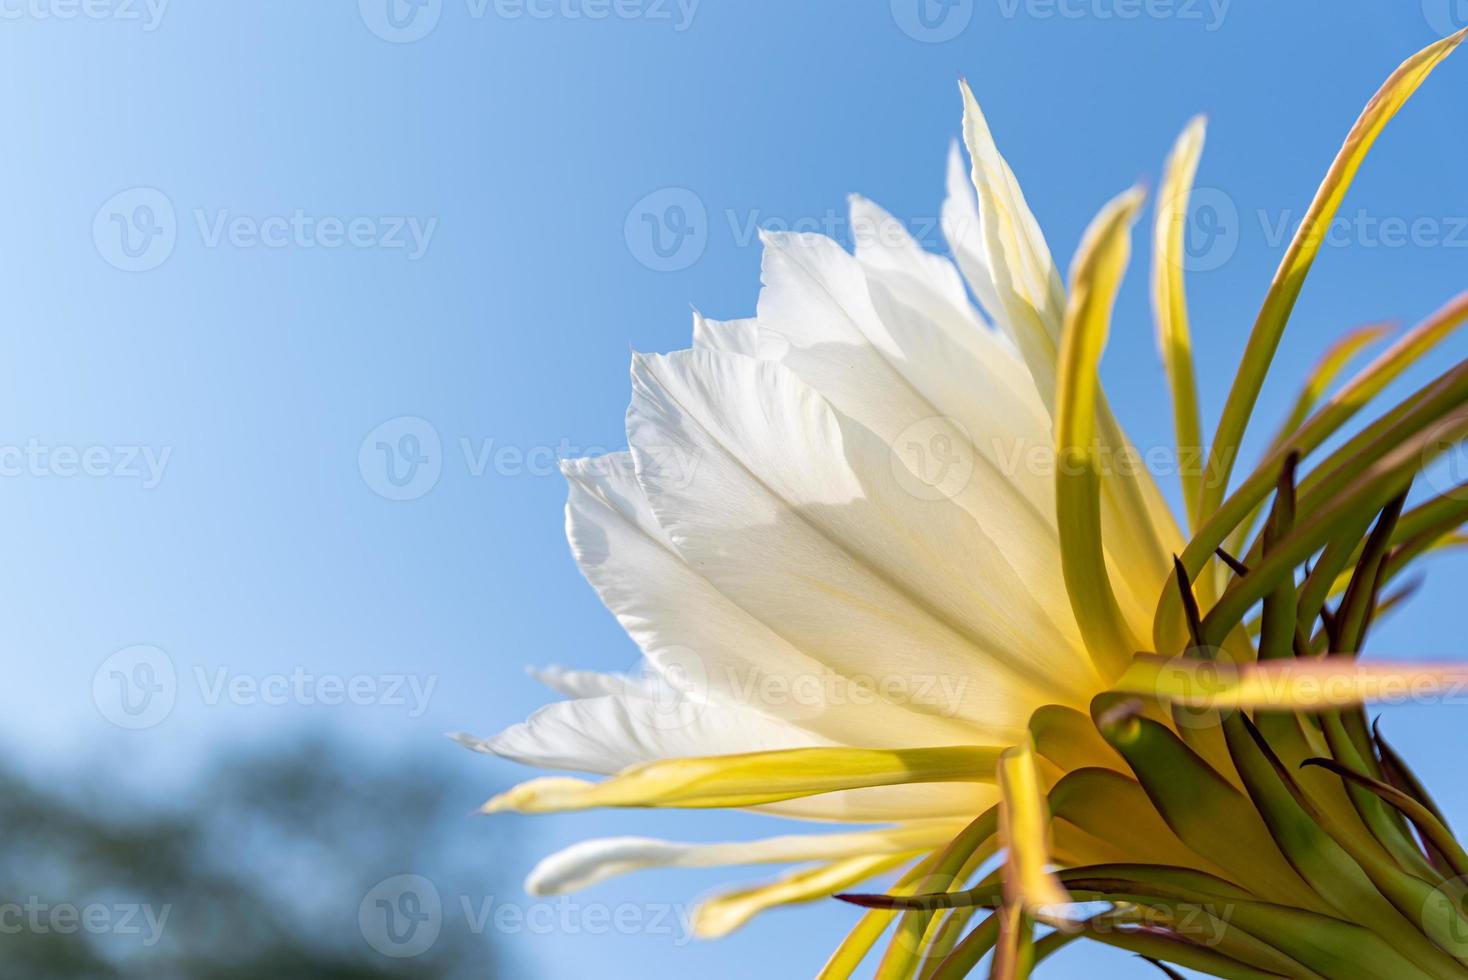 un fiore pitaya con petali bianchi e stami gialli in piena fioritura foto